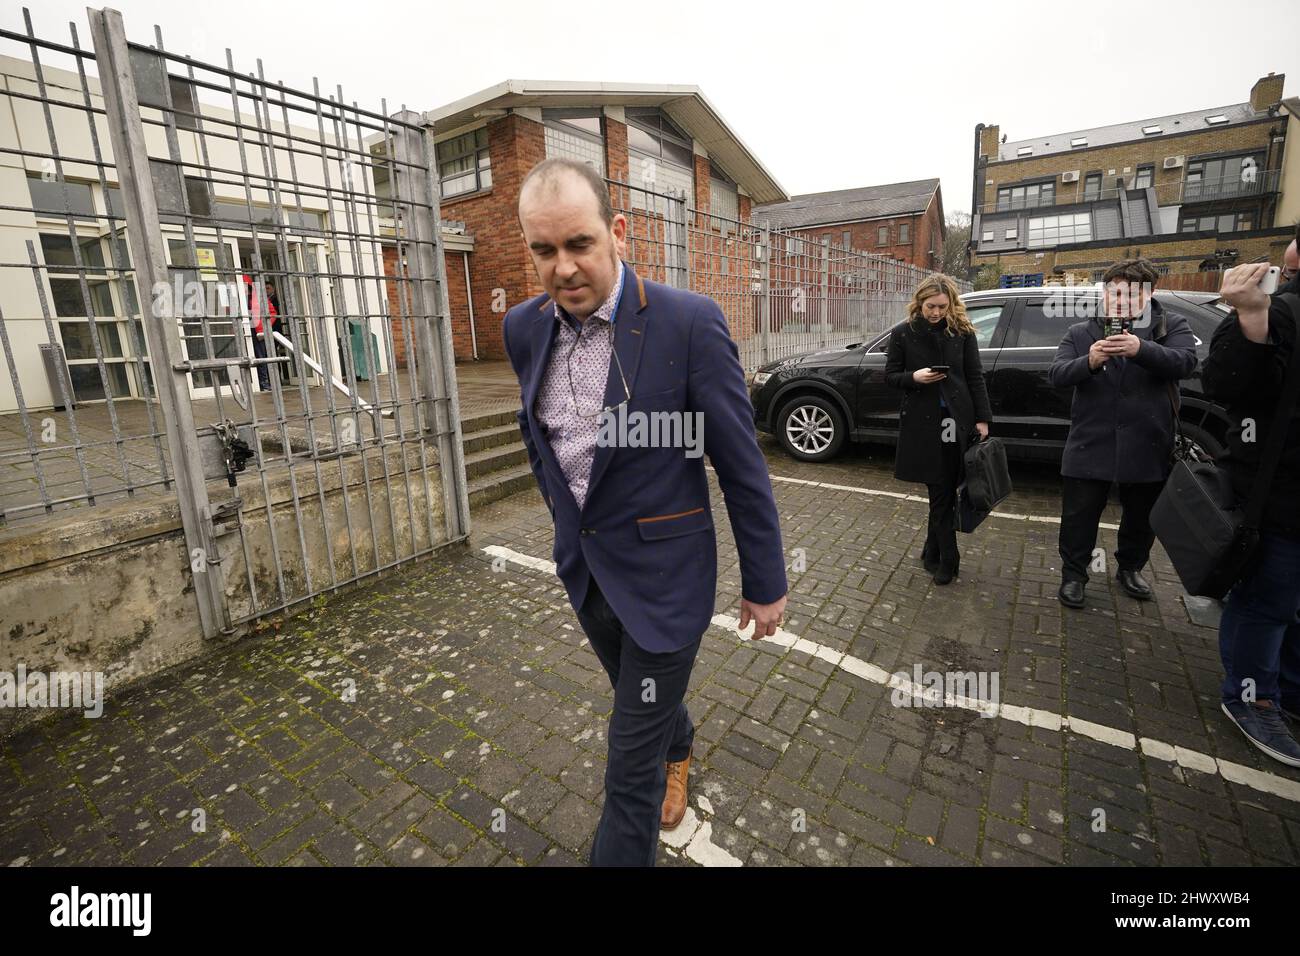 Desmond Wisley quitte le tribunal de district de Tallaght, à Dublin, où il a été accusé de conduite dangereuse et de dommages criminels après qu'un gros camion s'est écrasé dans les portes de l'ambassade de Russie lundi. Date de la photo: Mardi 8 mars 2022. Banque D'Images